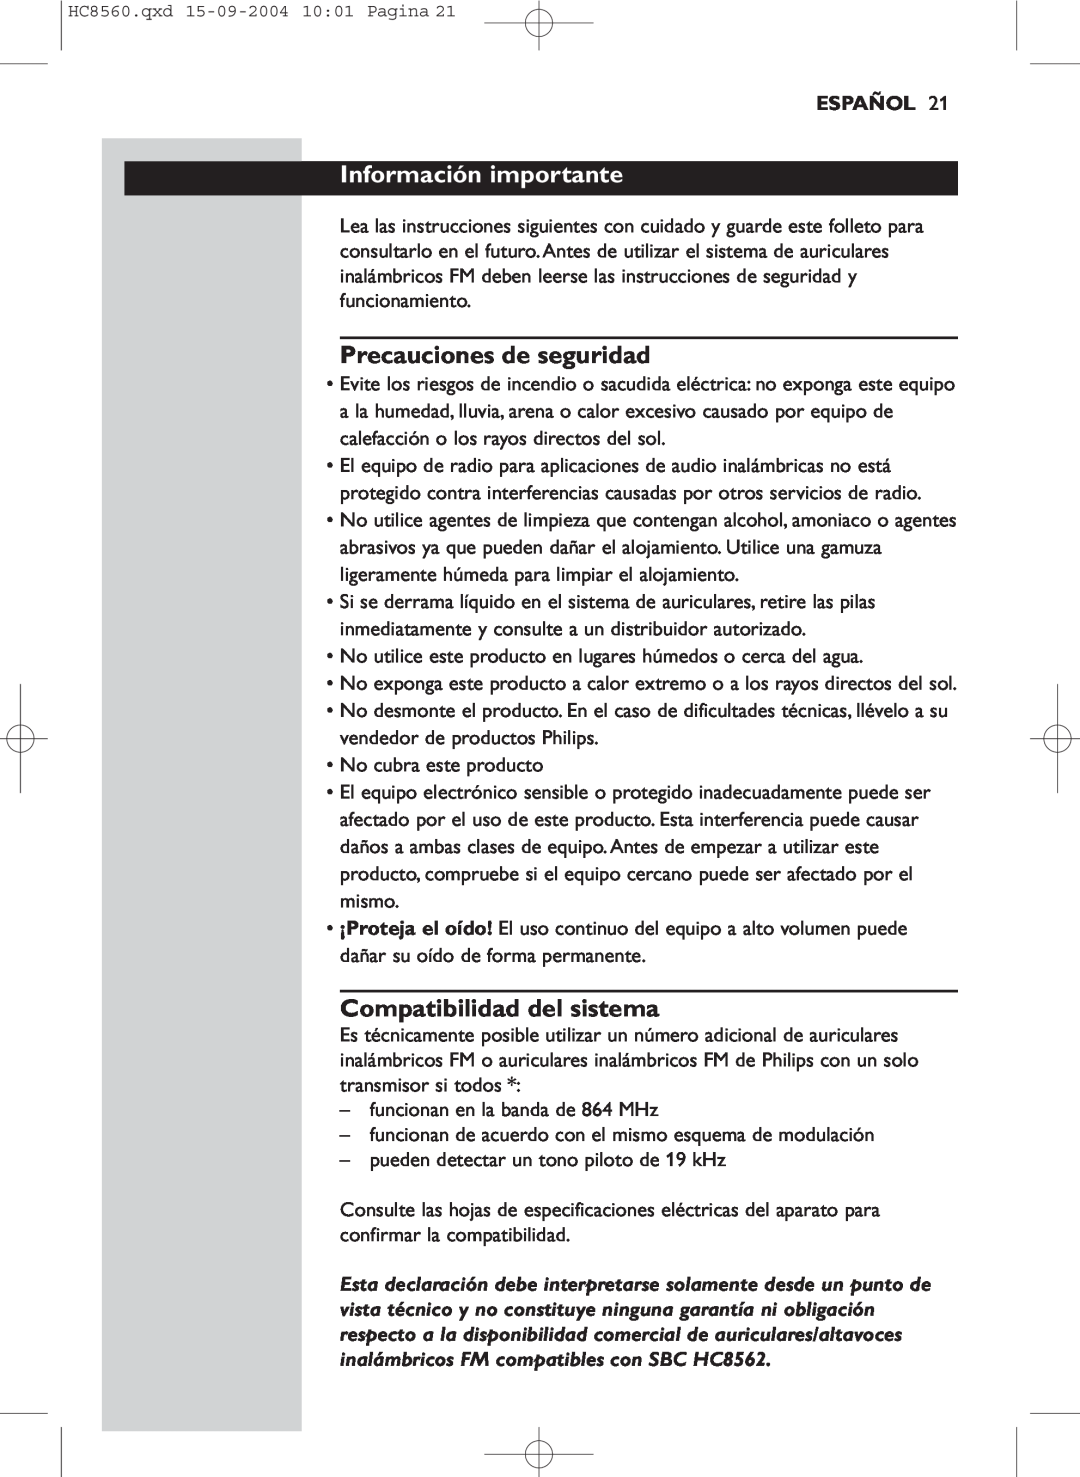 Philips HC 8560 manual Información importante, Precauciones de seguridad, Compatibilidad del sistema, Español 